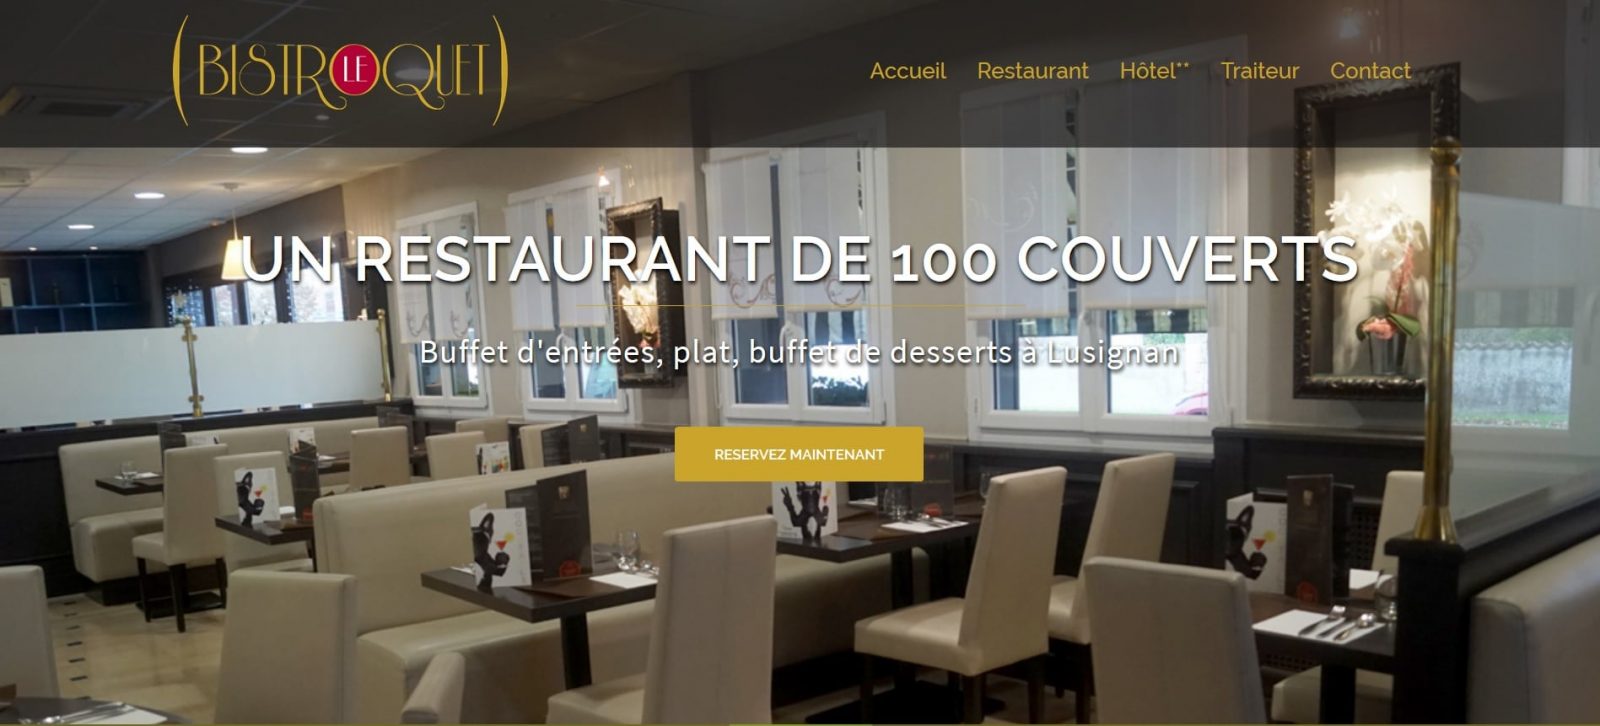 Site-vitrine-pour-un-hotel-restaurant-webexperts-bordeaux